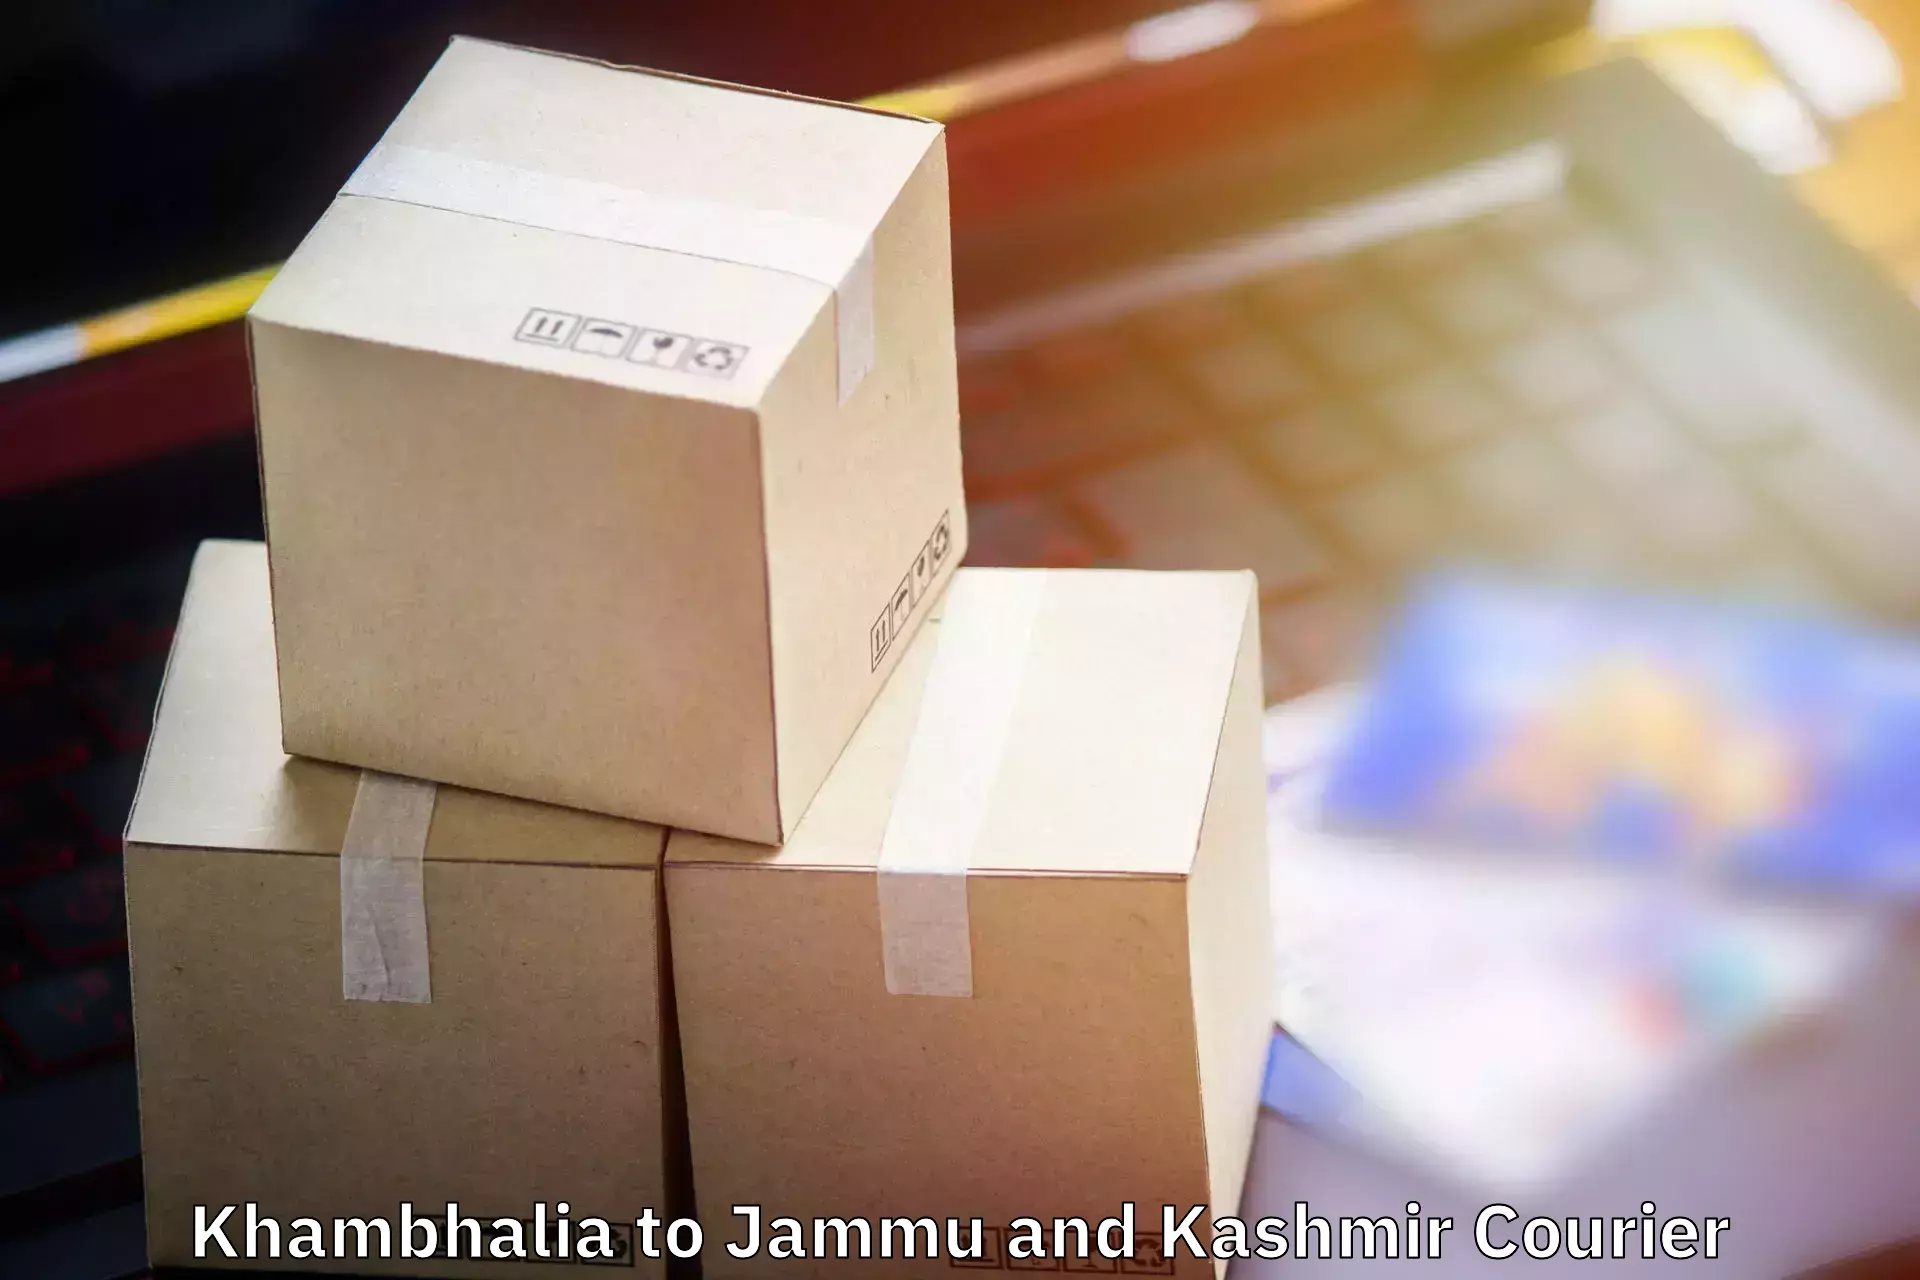 Baggage courier logistics Khambhalia to Sunderbani